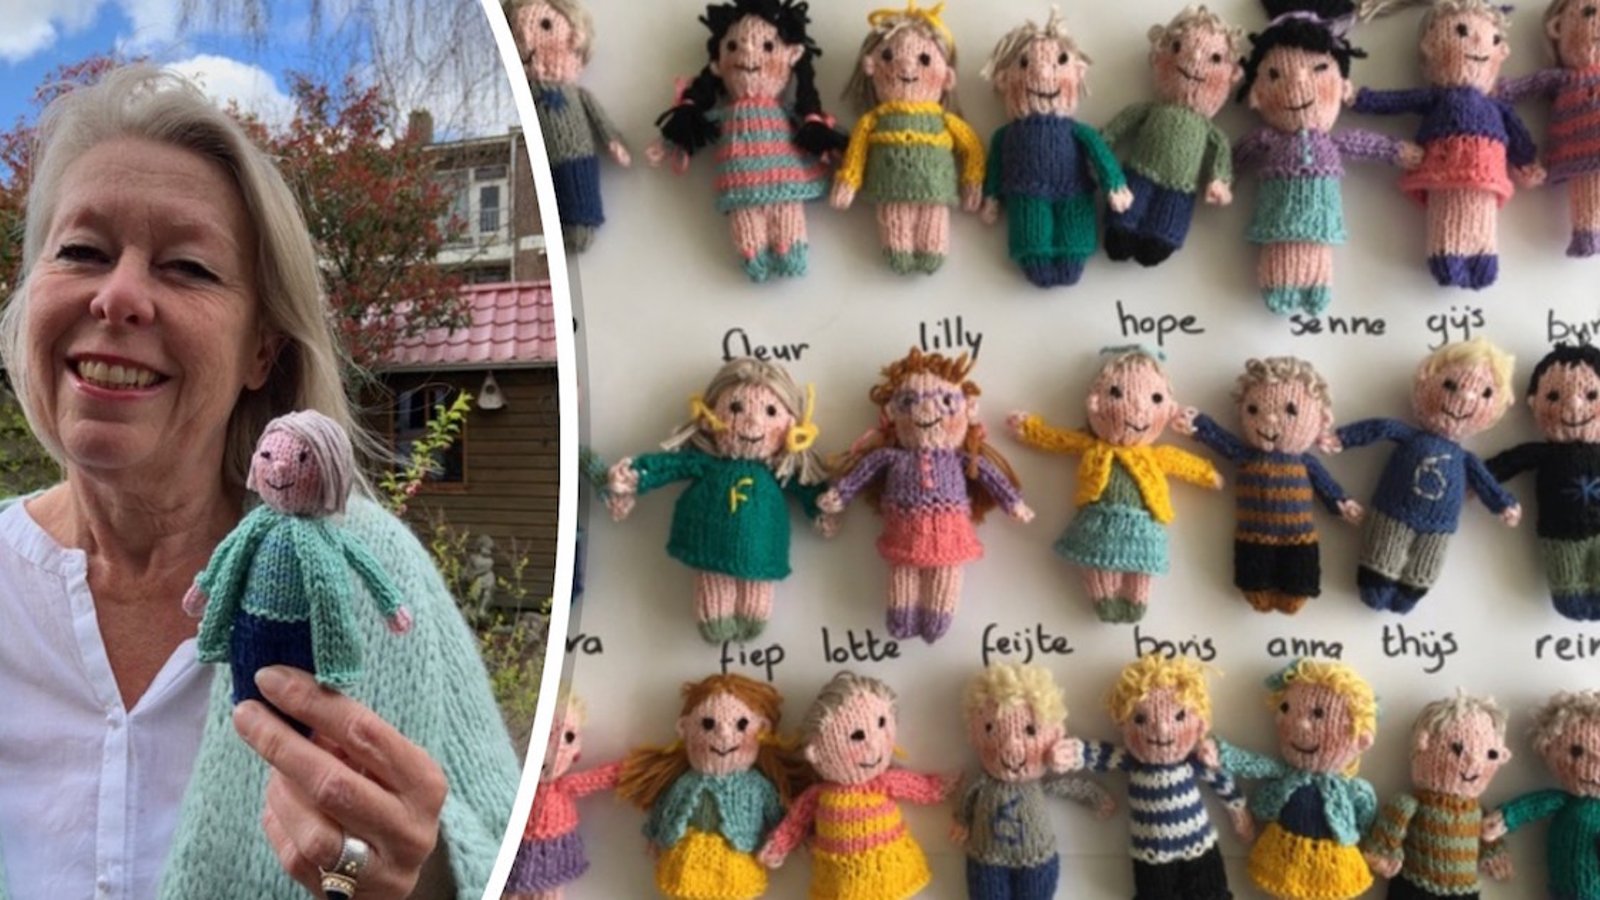 Cette enseignante a tricoté 23 poupées; une pour chacun de ses élèves dont elle est séparée à cause de la COVID-19